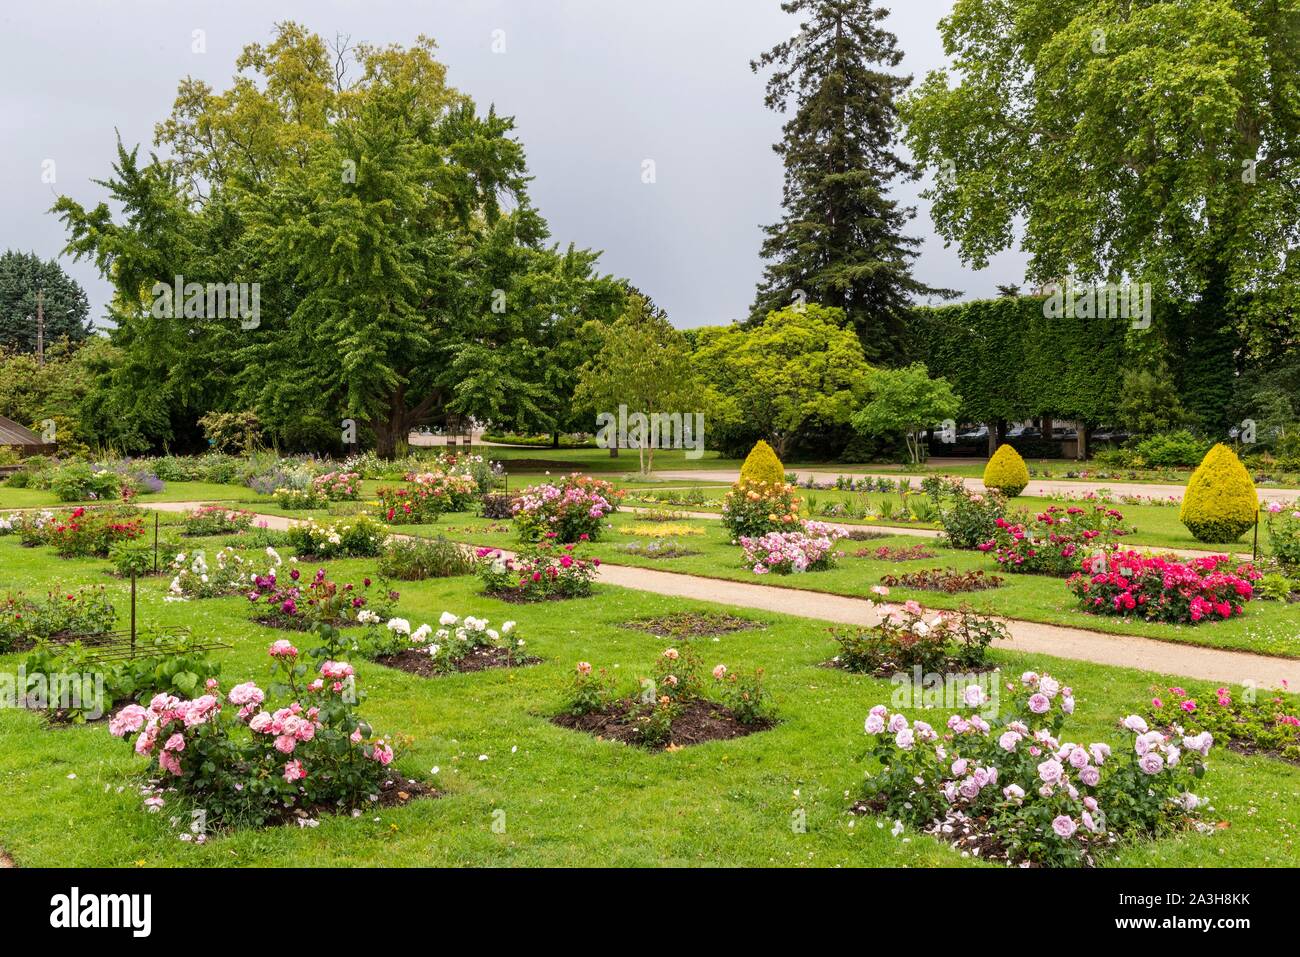 France, Loiret, Orleans, Parc floral de la Source, rose garden Stock Photo